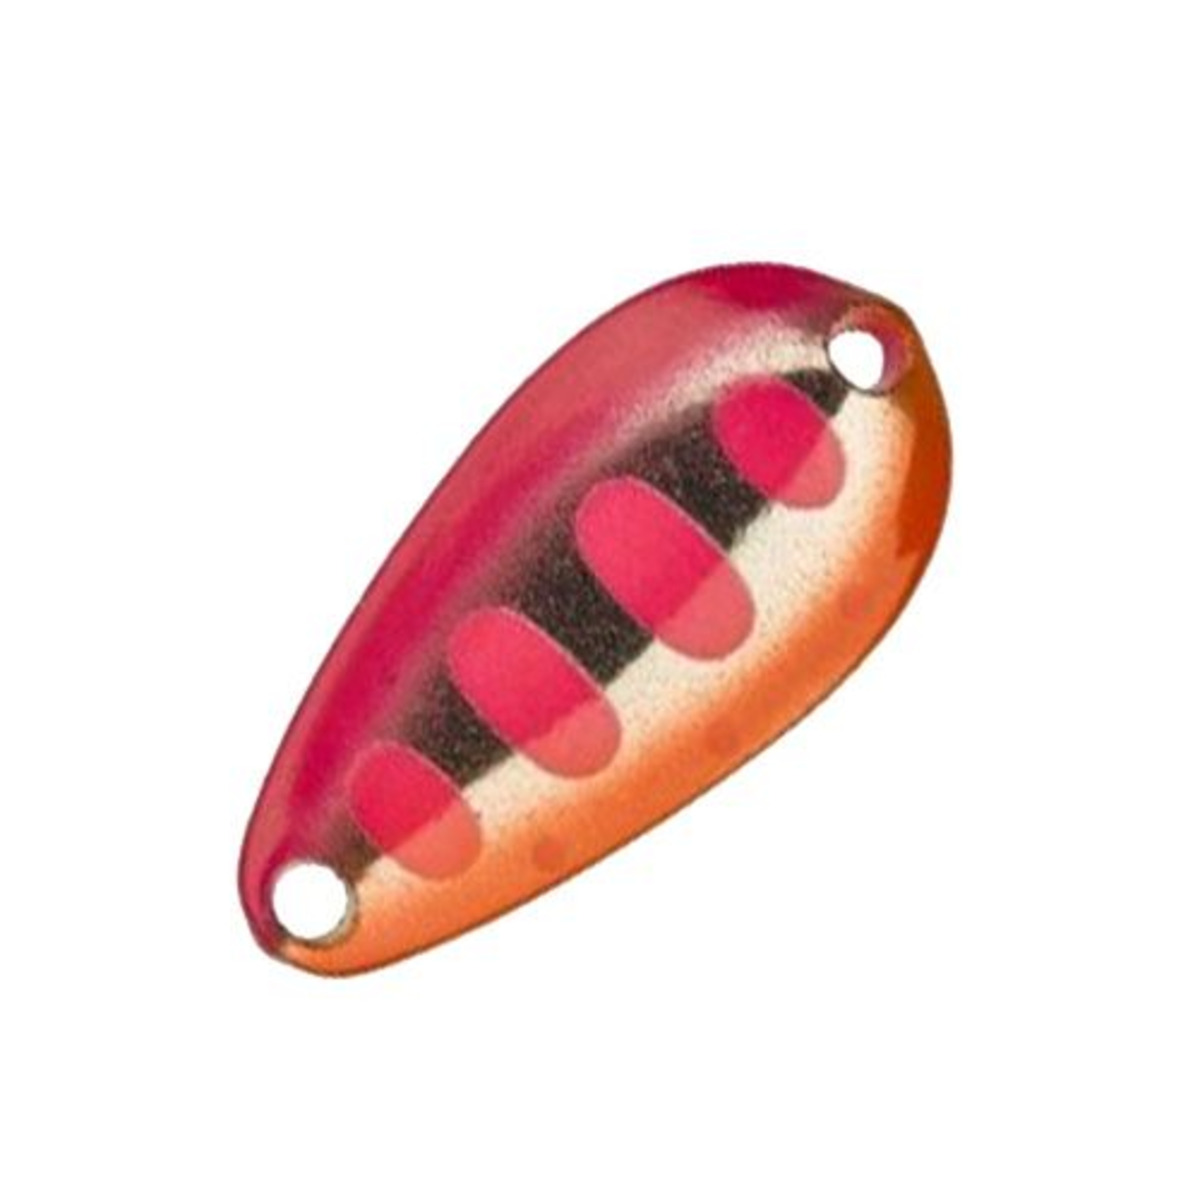 Illex Tearo 1.6 G - 1.6 g - 22 mm - Pink Yamame-Fluo Pink